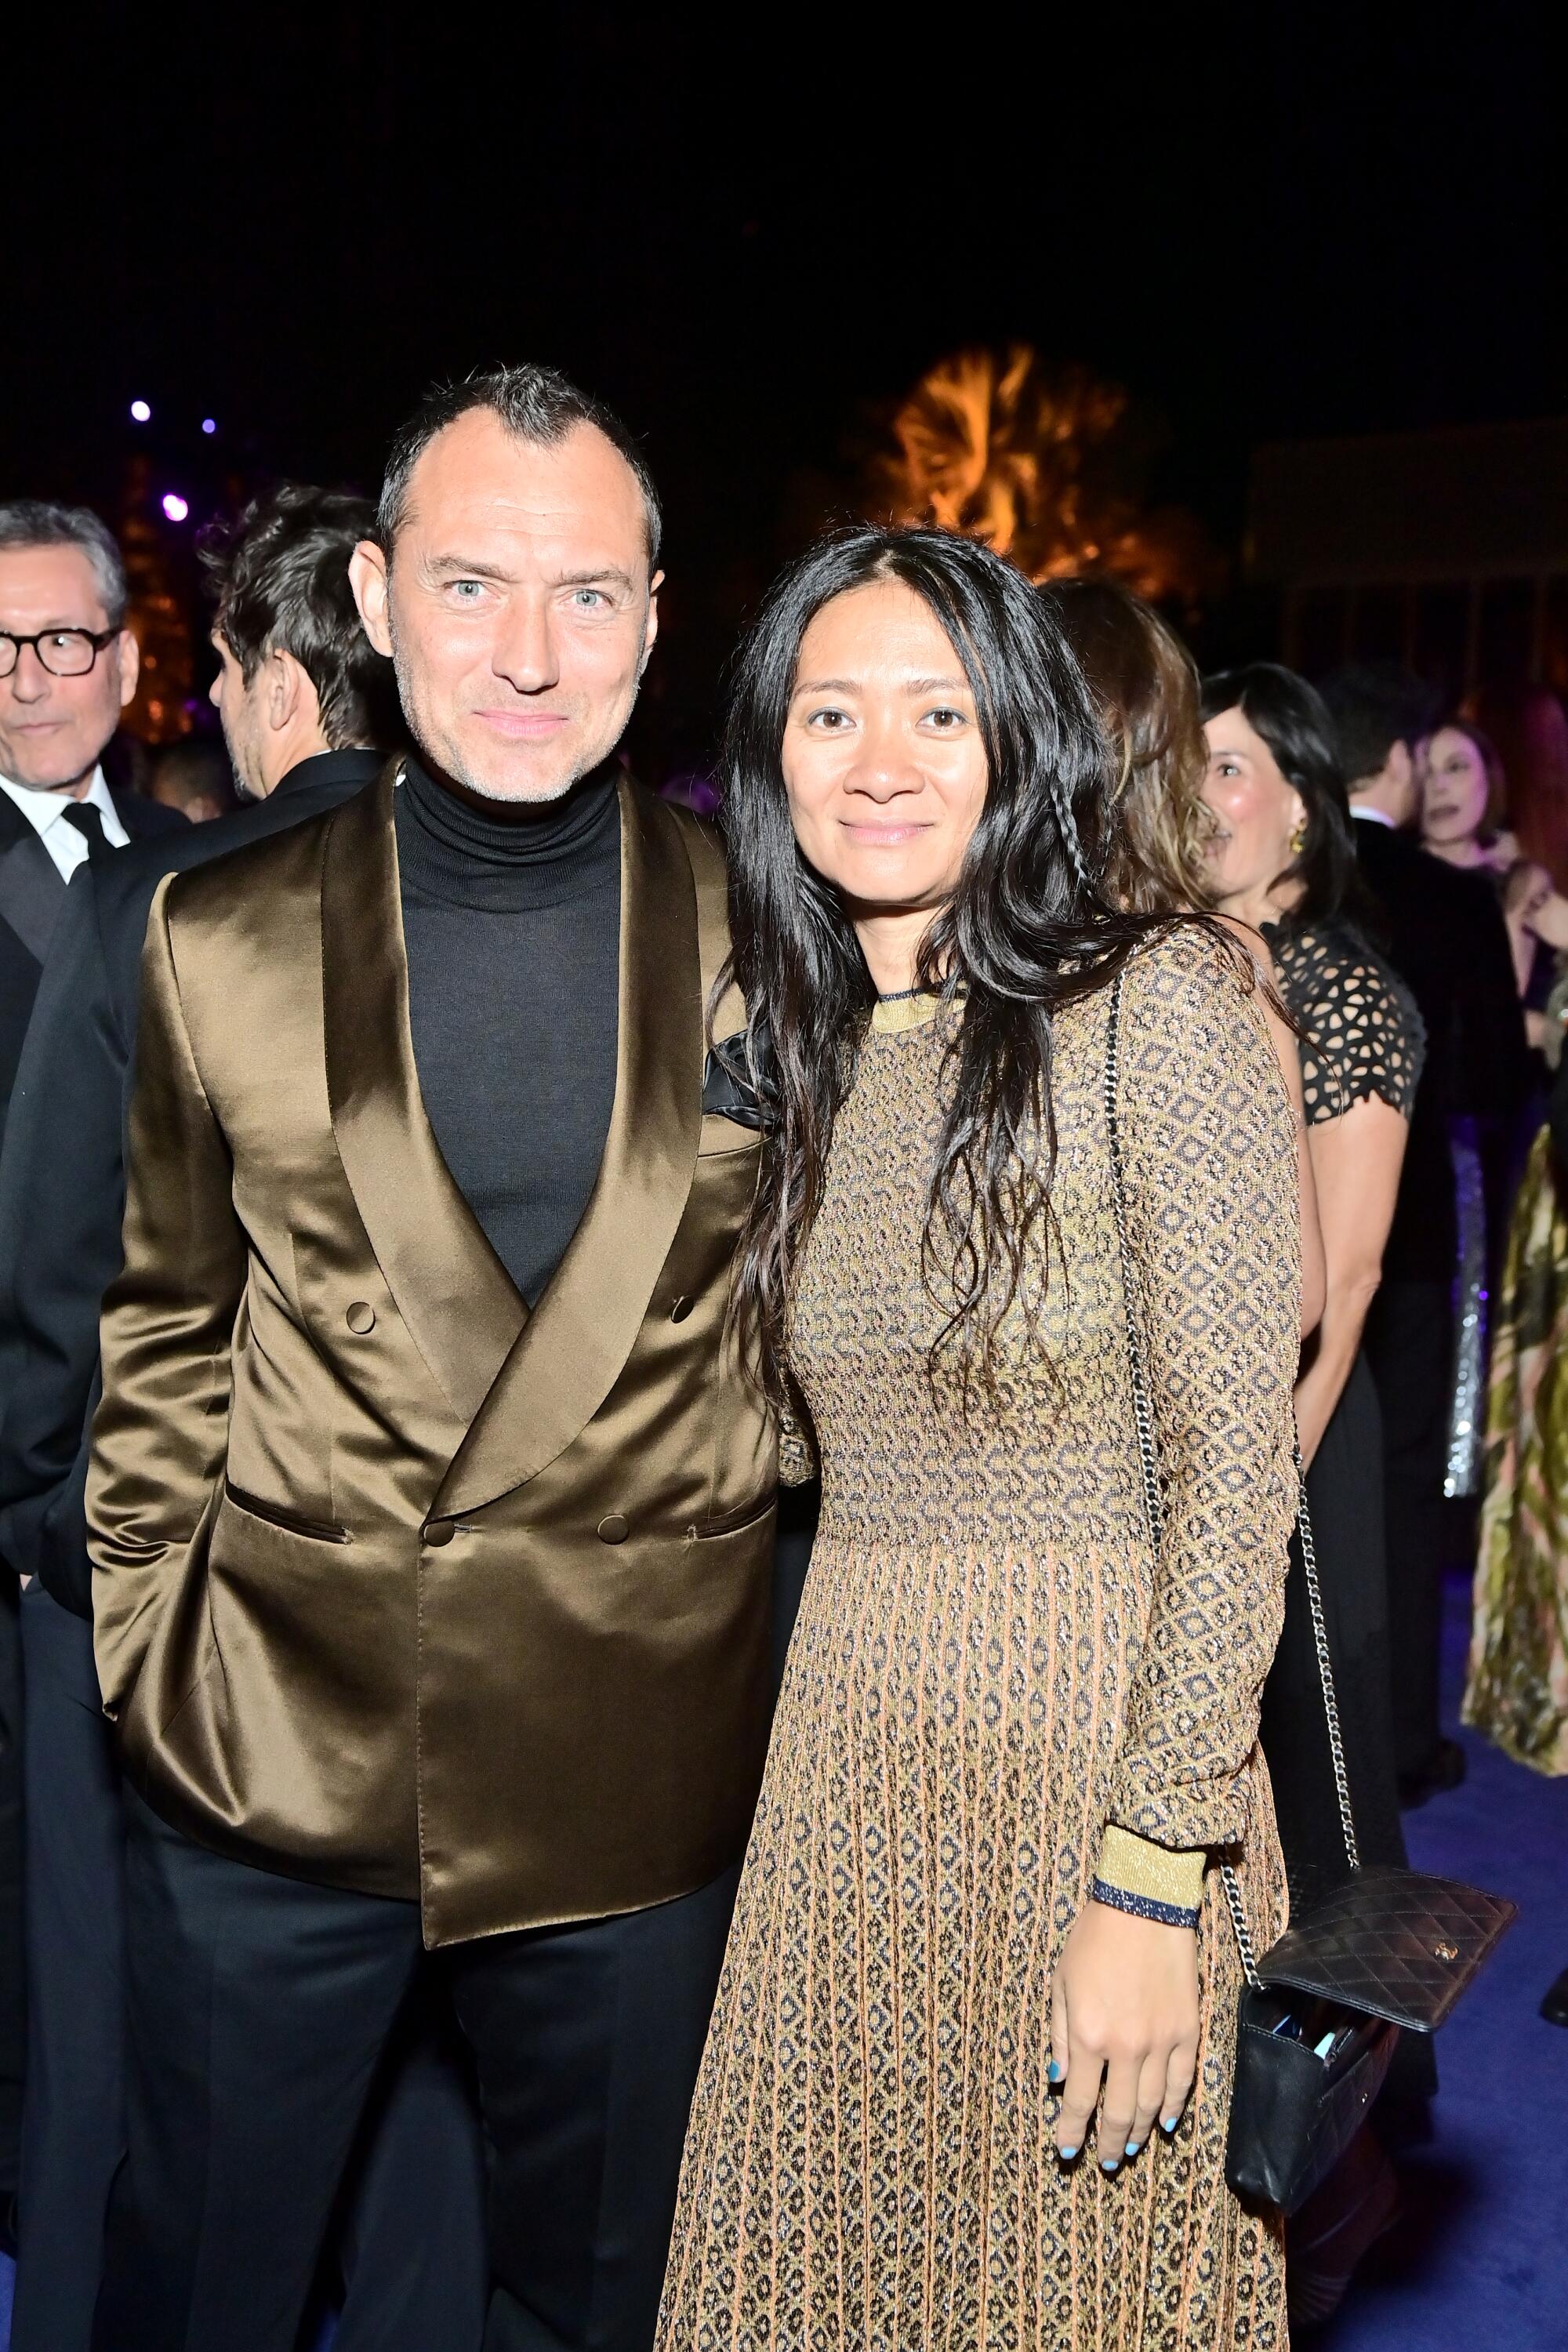 Jude Law and Chloe Zhao in formalwear